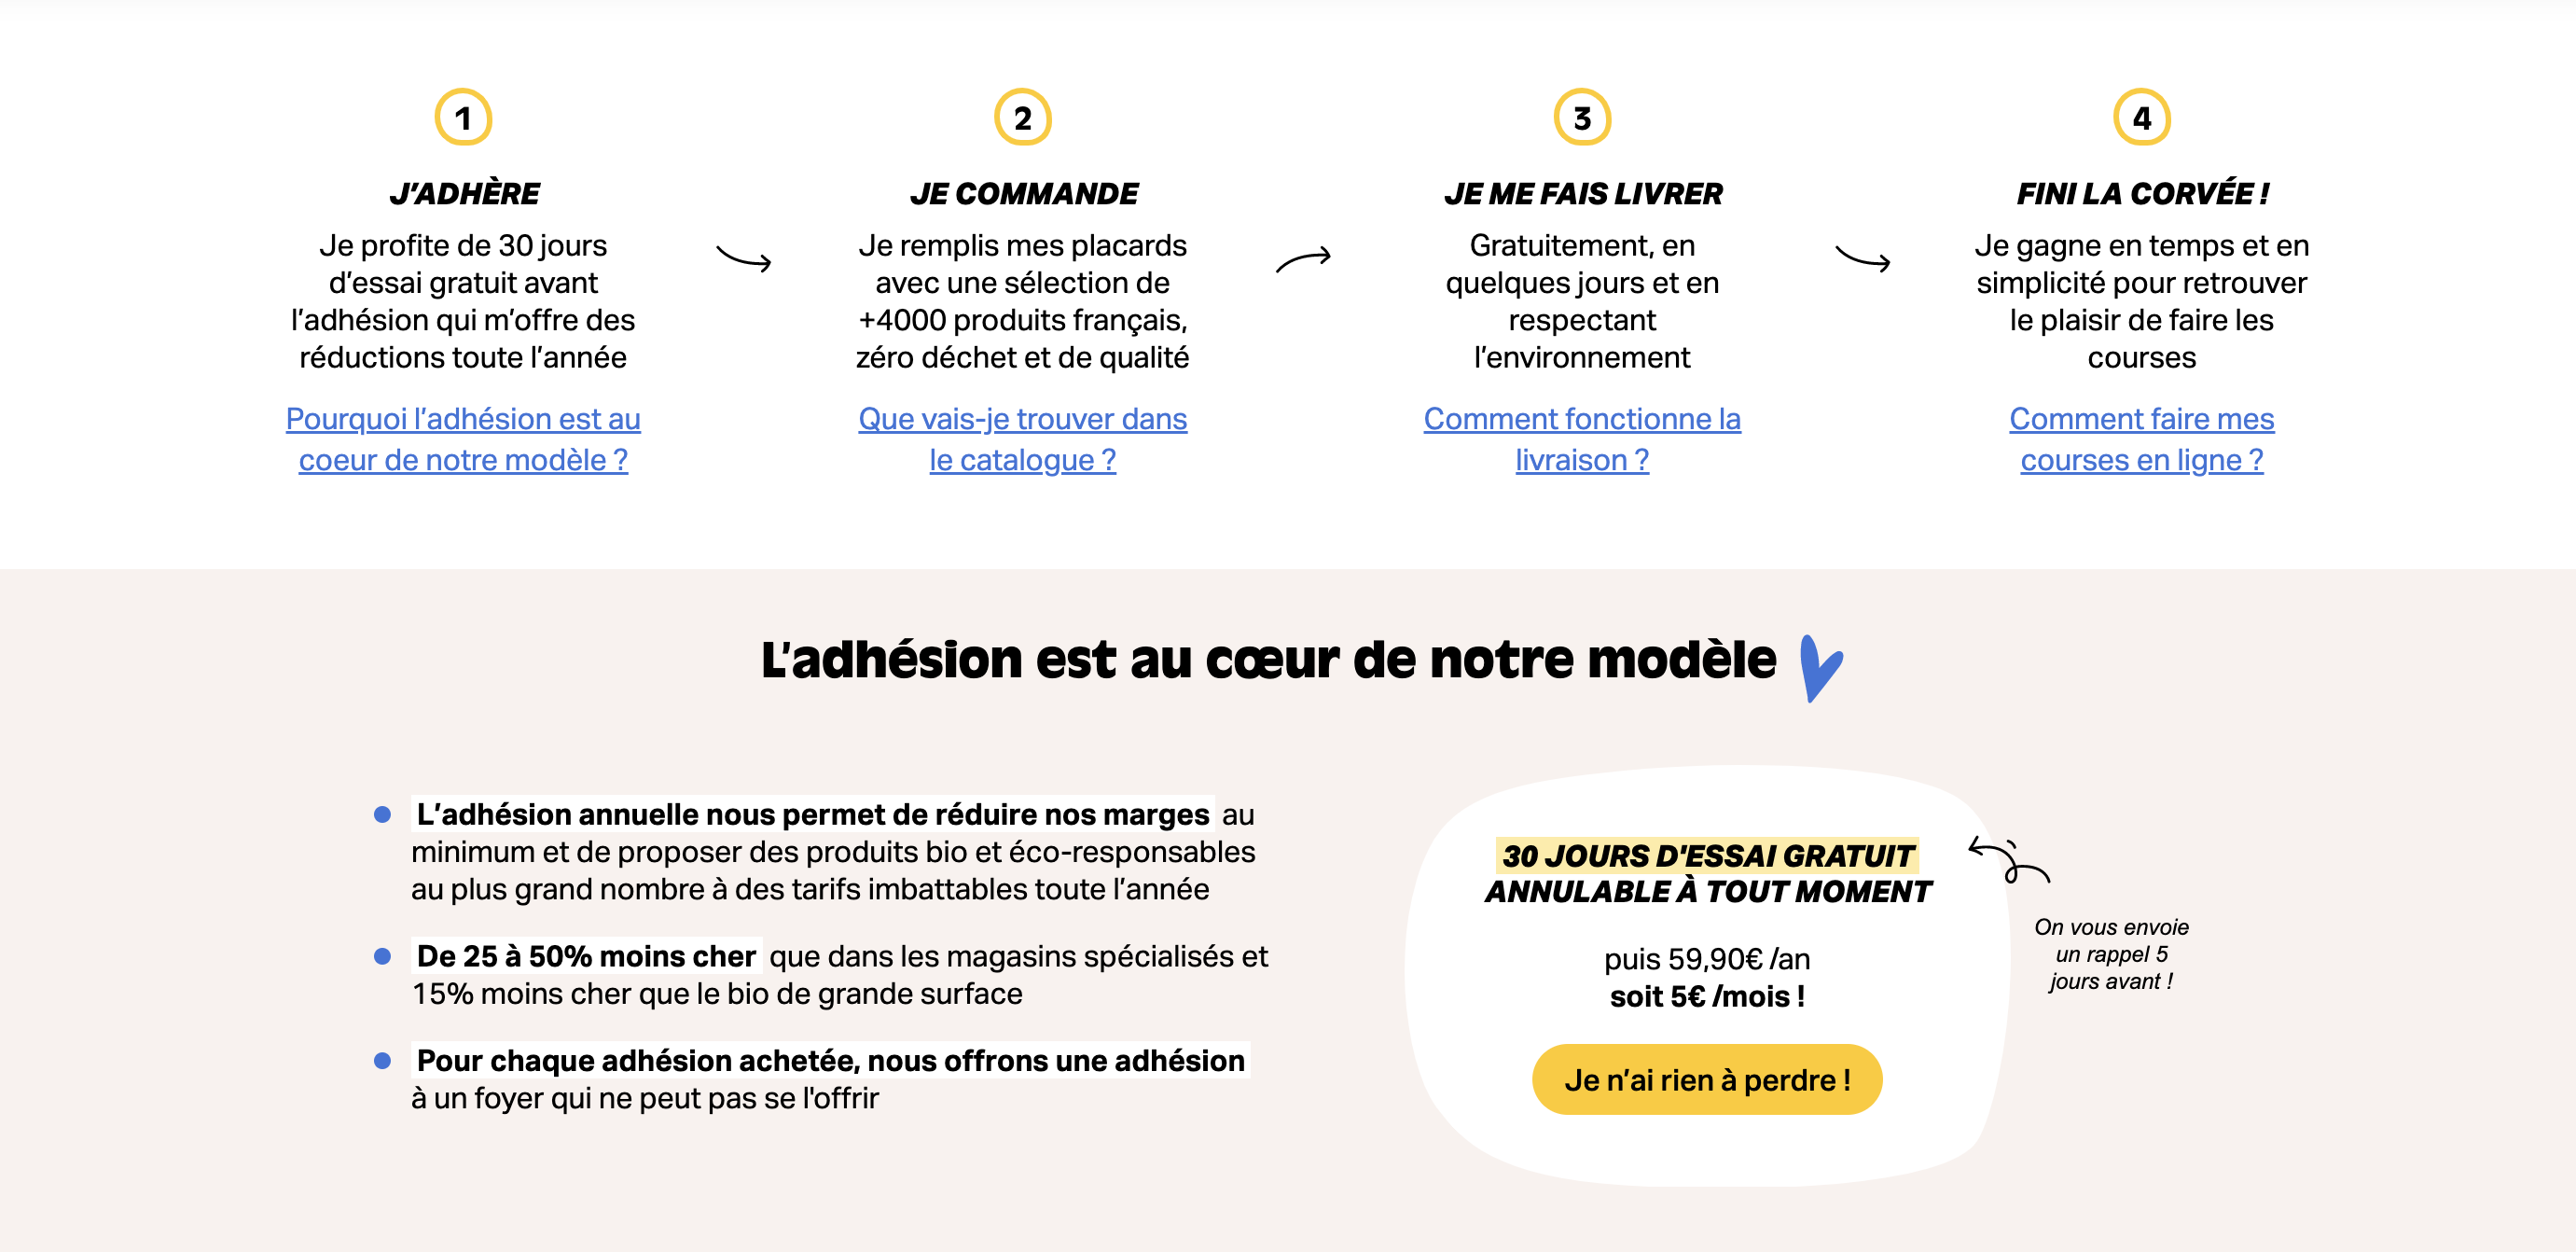 Le contenu principal de la page d'accueil de La Fourche contient différentes sections. On y voit les étapes par lequel le client passe, de l'adhésion jusqu'à la livraison par exemple.